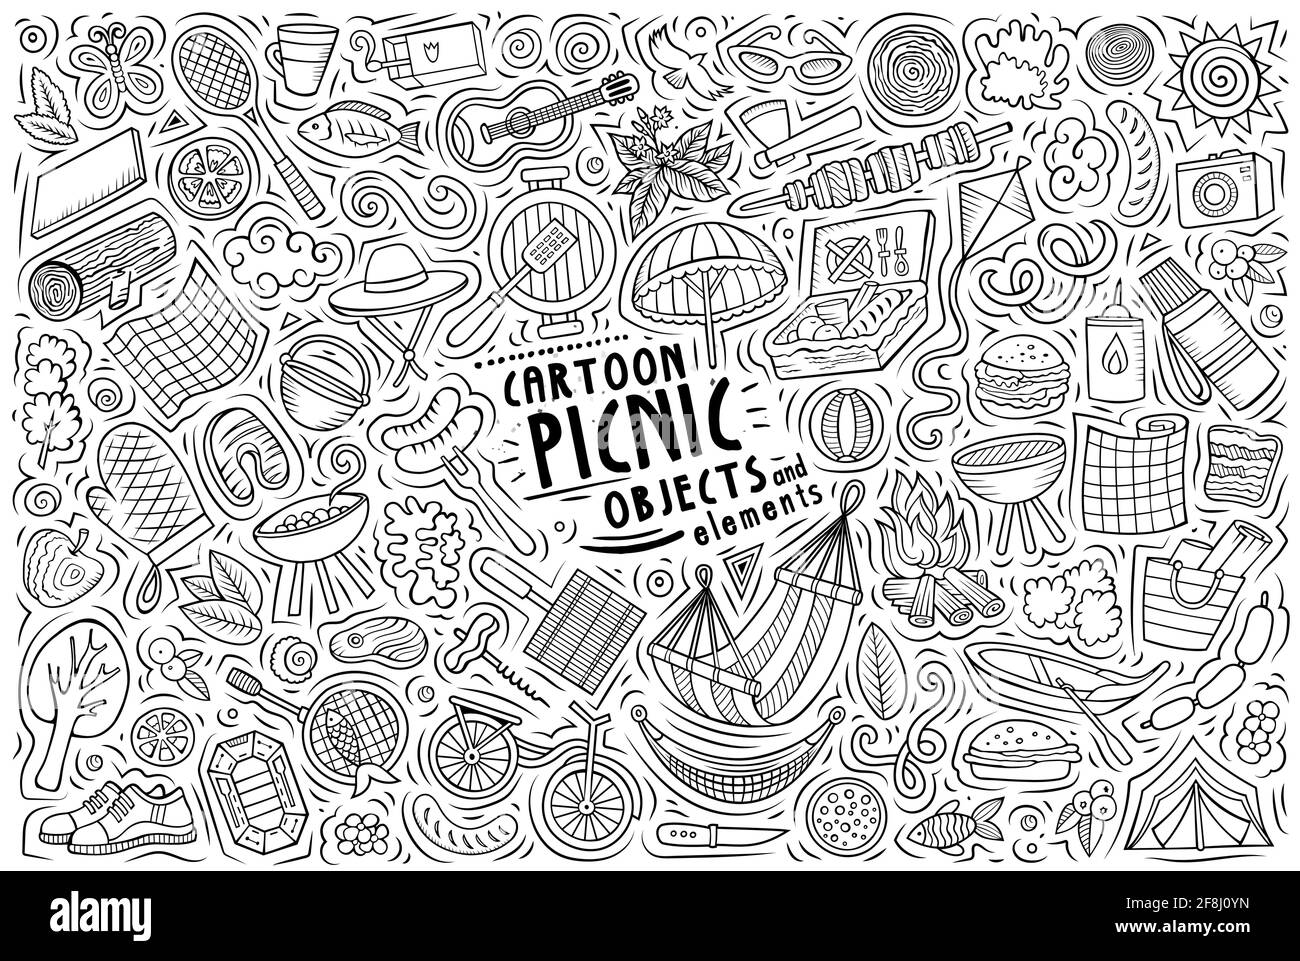 Line art vettoriale doodle disegnata a mano cartoon set di oggetti, oggetti e simboli a tema picnic Illustrazione Vettoriale